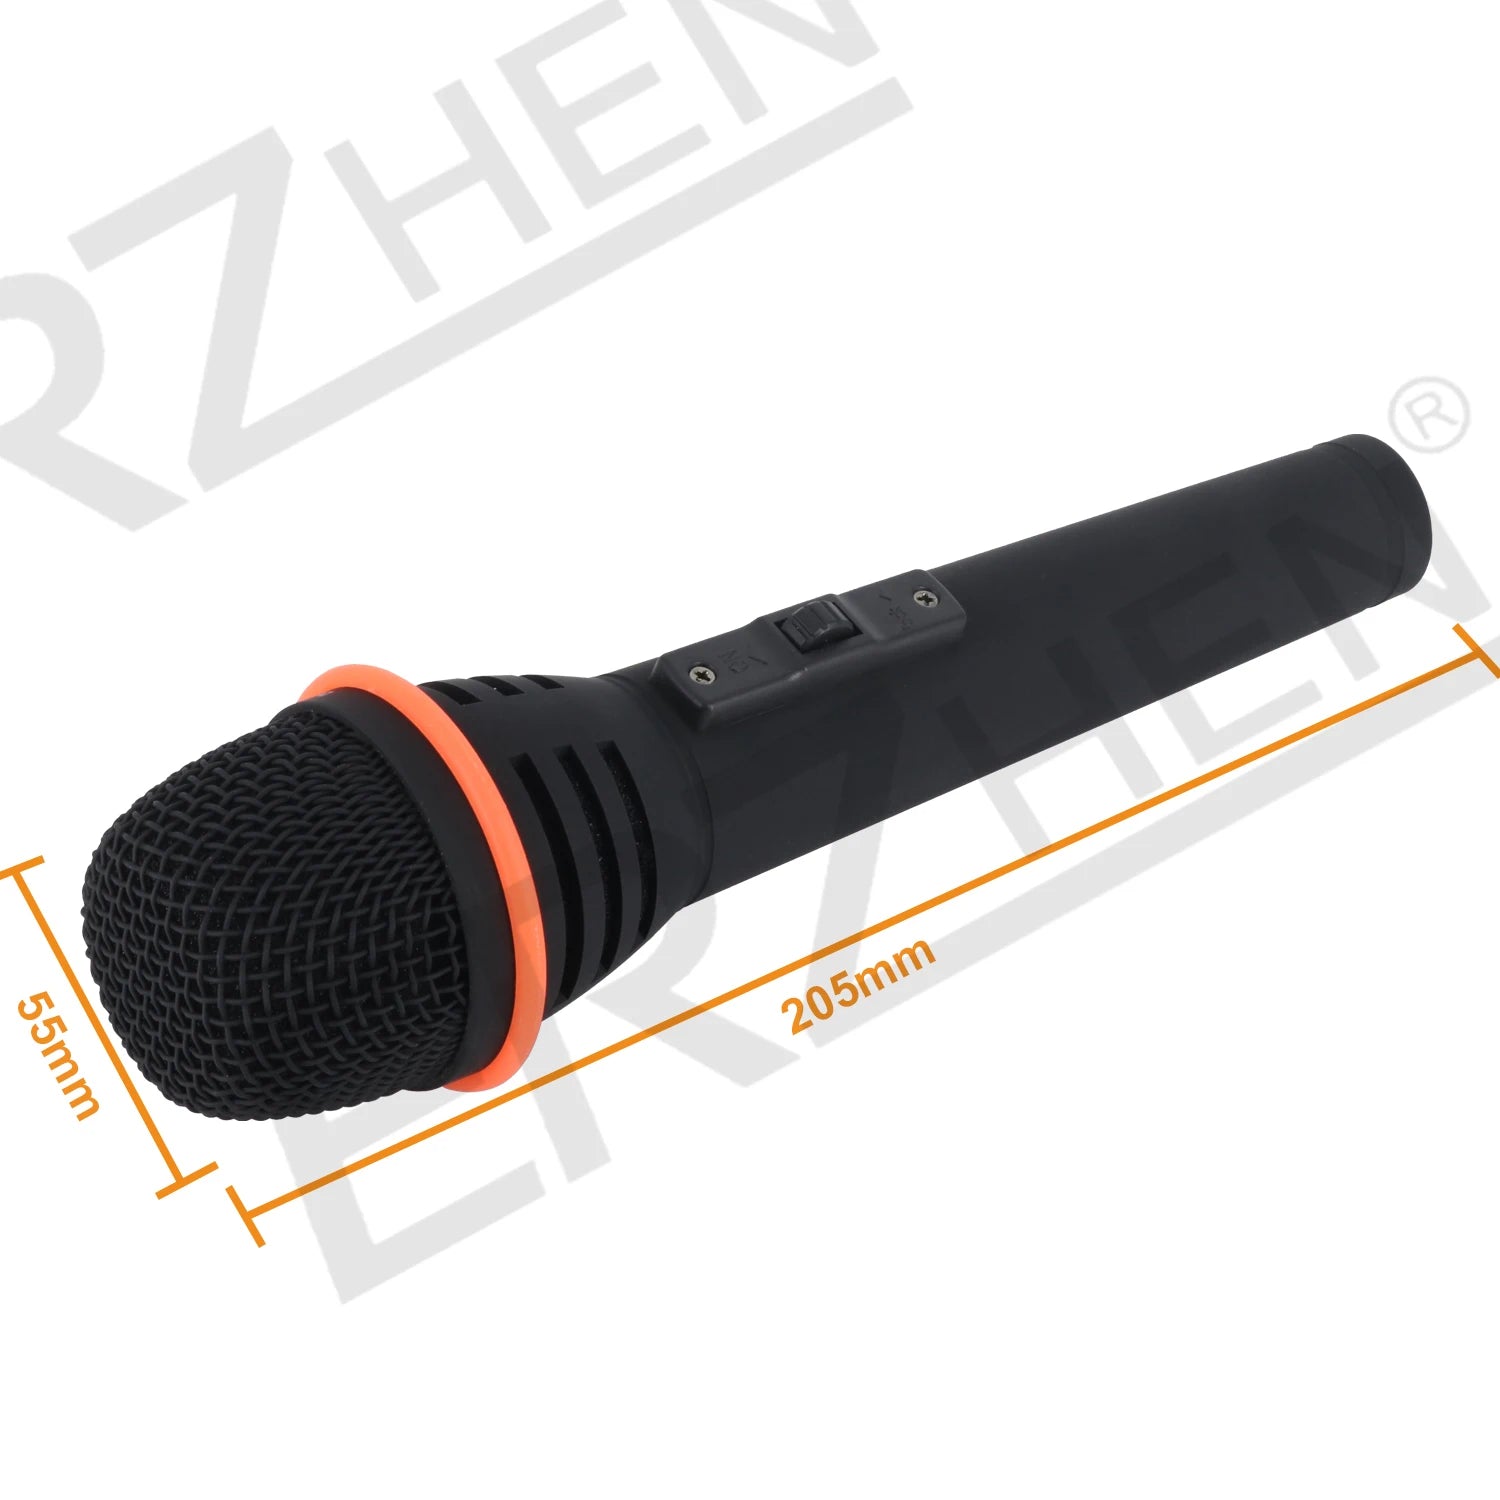 ERZHEN Dynamic Vocal Wired Microphone #TGX61